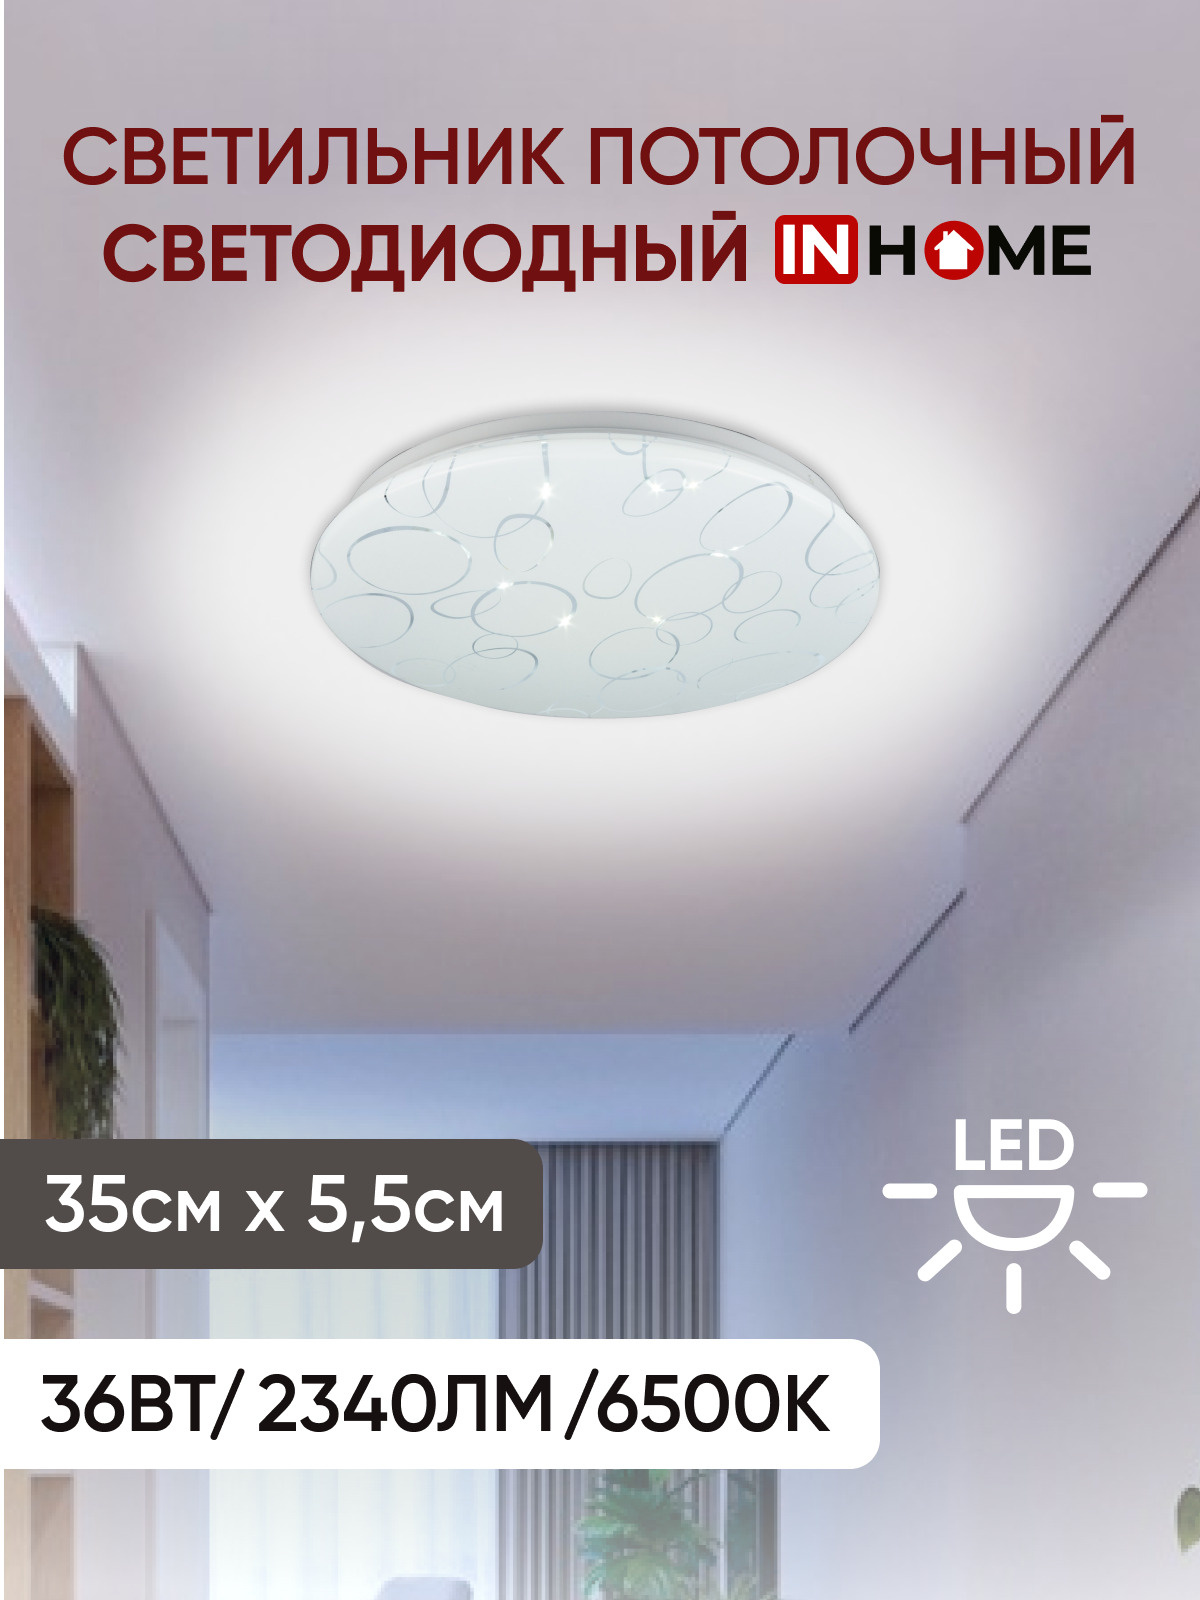 Светильник потолочный светодиодный серии DECO ОРИОН IN HOME. 